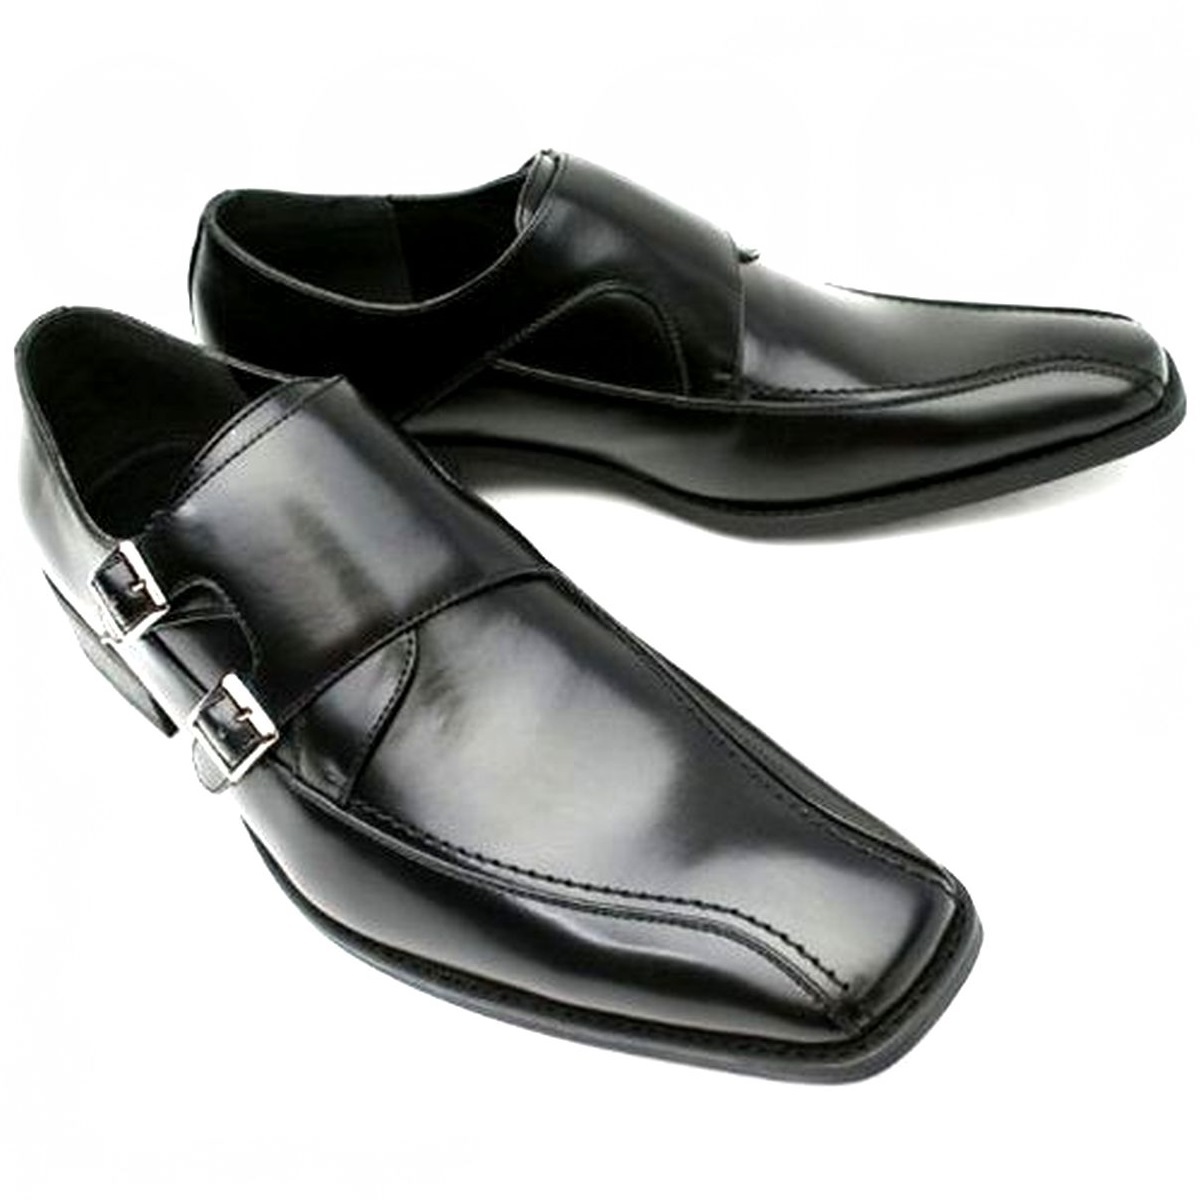 黒 25cm お手入れ簡単 雨に強い合皮ビジネスシューズ ダブルモンク紳士靴 ゆったり幅広 某有名靴メーカー同工場制作 本州送料無料 U2463_画像2